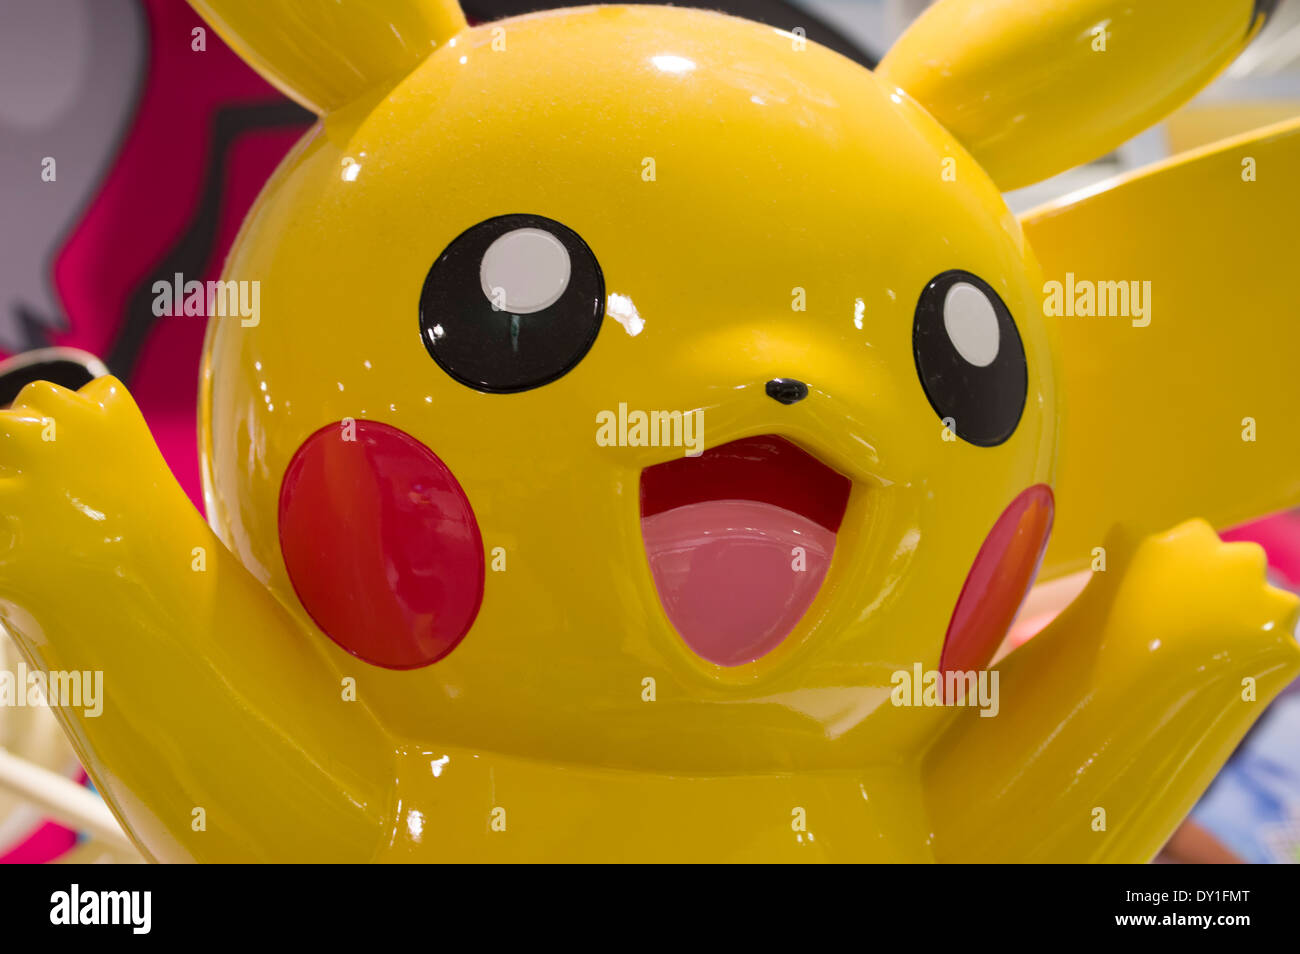 Pikachu modèle au Centre Pokemon Osaka, Japon Banque D'Images